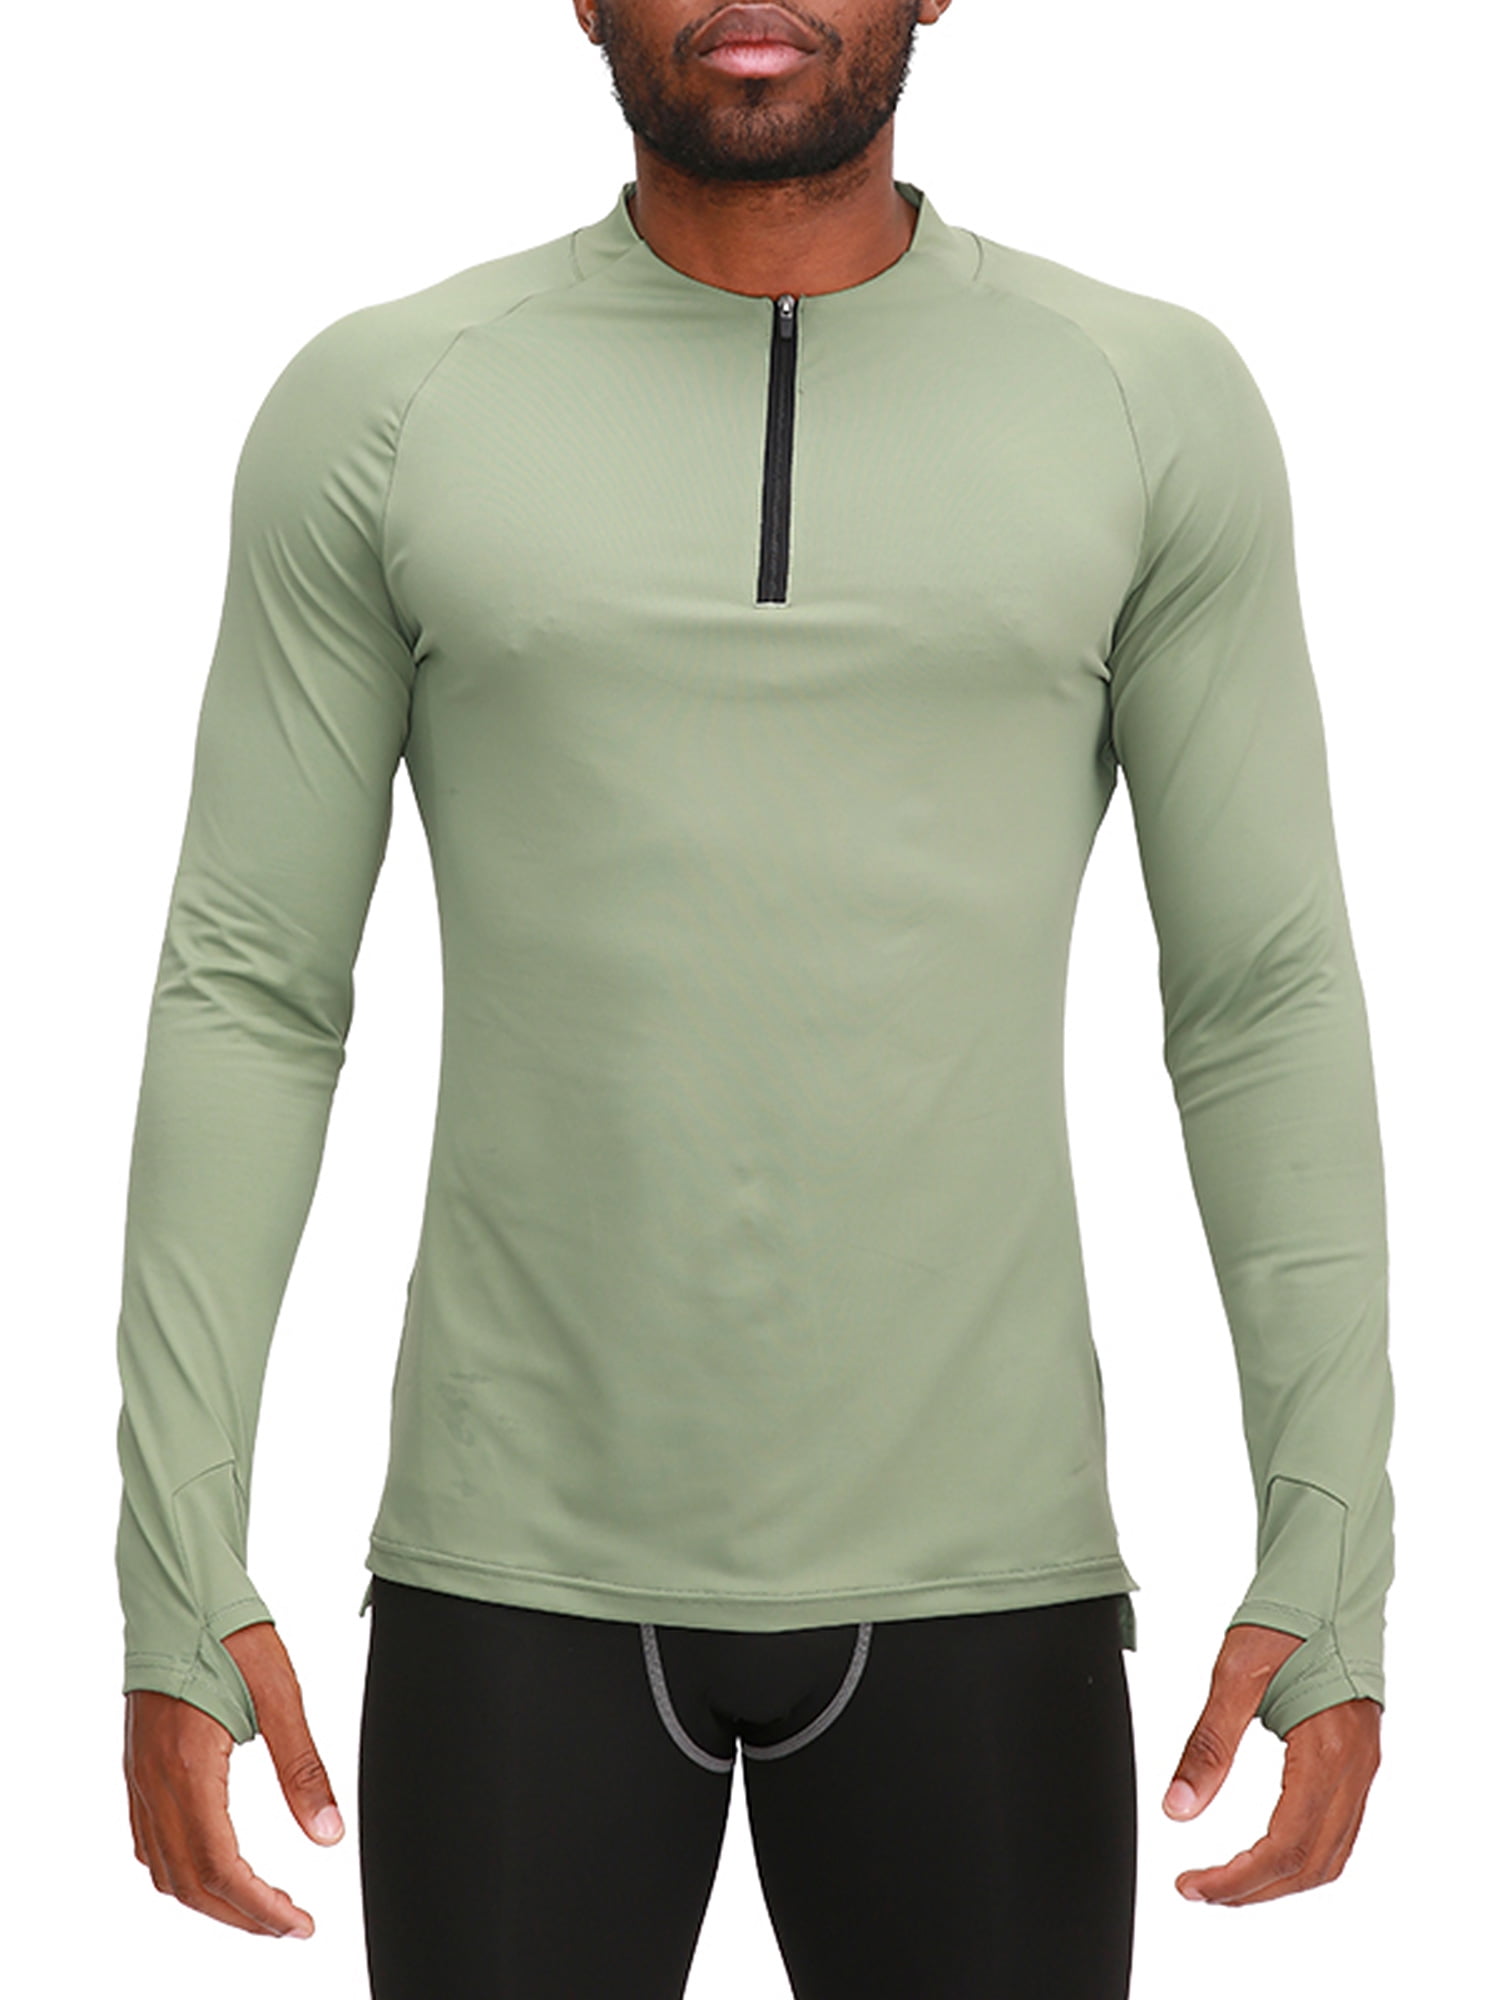 Men's Compression 1/4 Zipper Shirt Mock Neck Moisture Wicking Short Sleeve Tops 